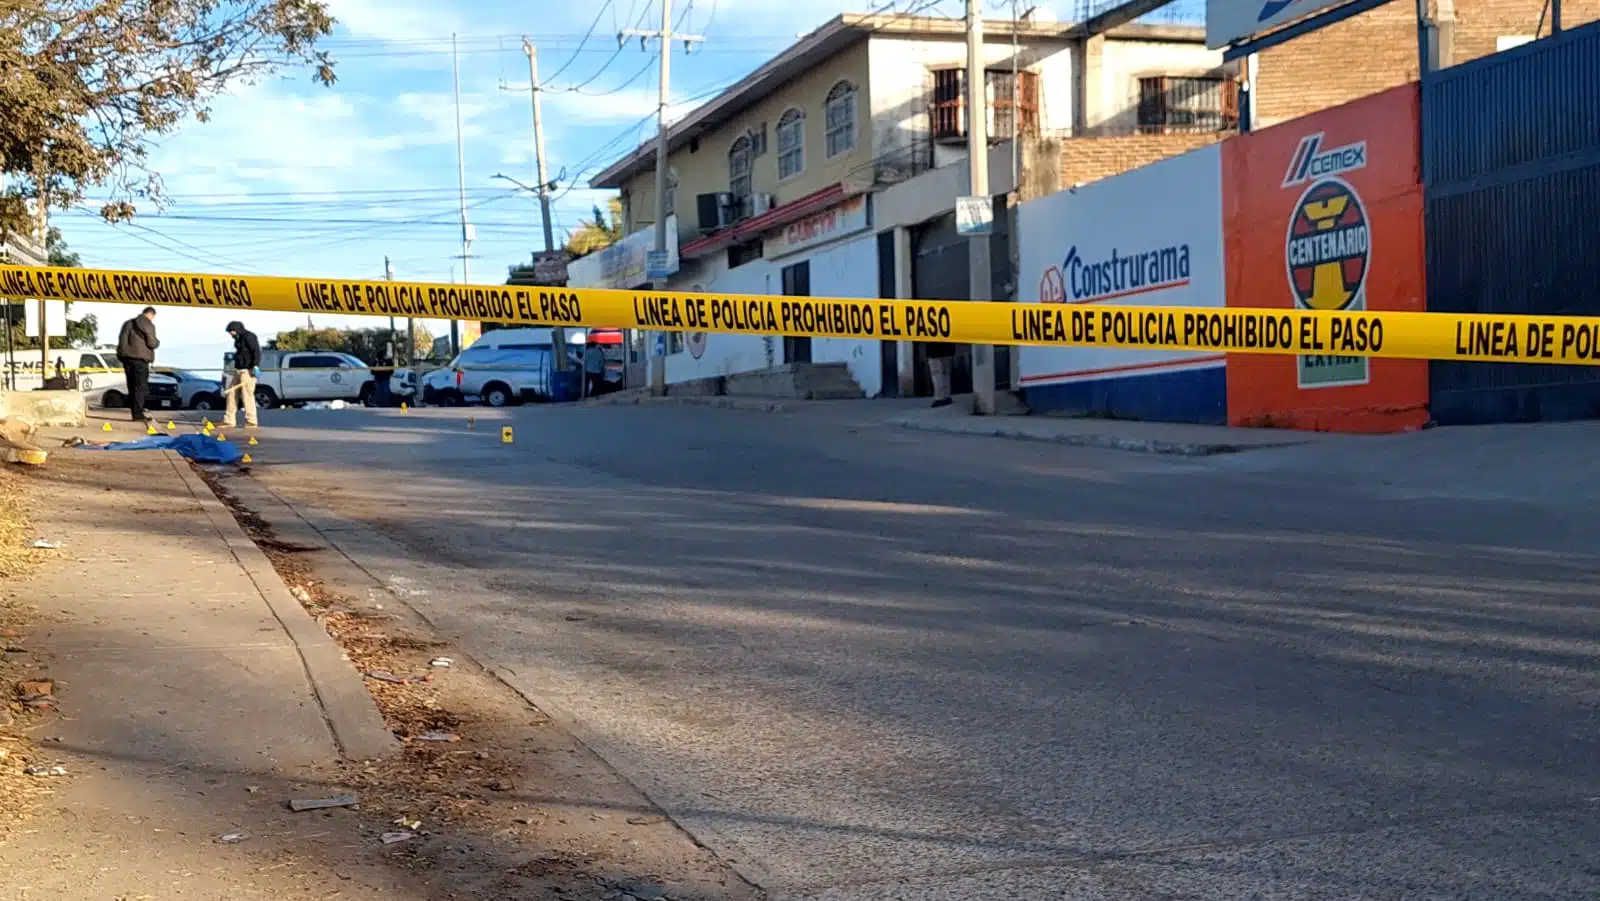 Diego Armando se llamaba el hombre que fue asesinado a golpes junto a una gasolinera al sur de Culiacán